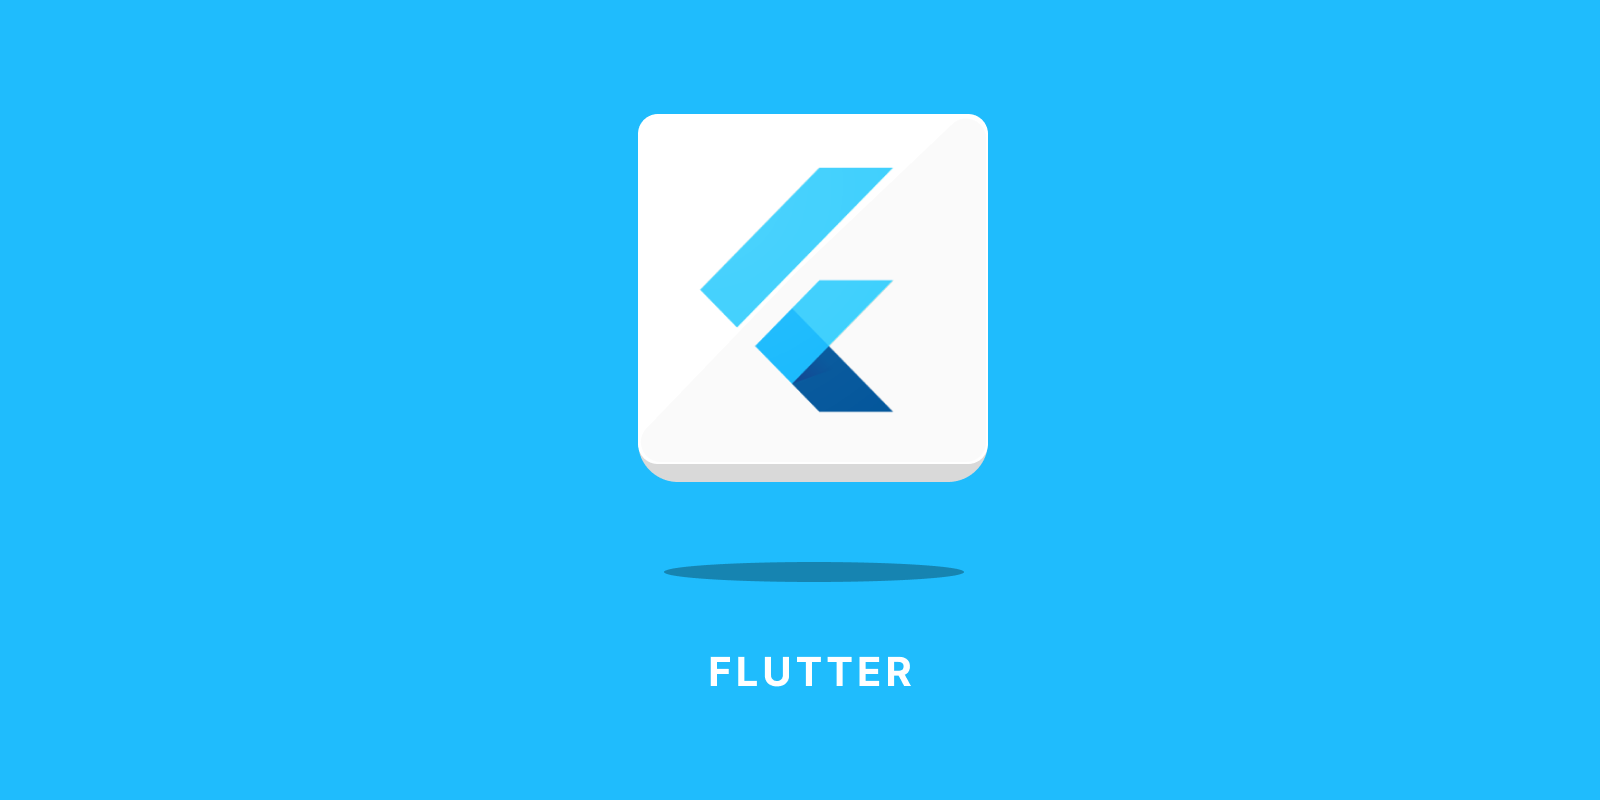 hire flutter developers